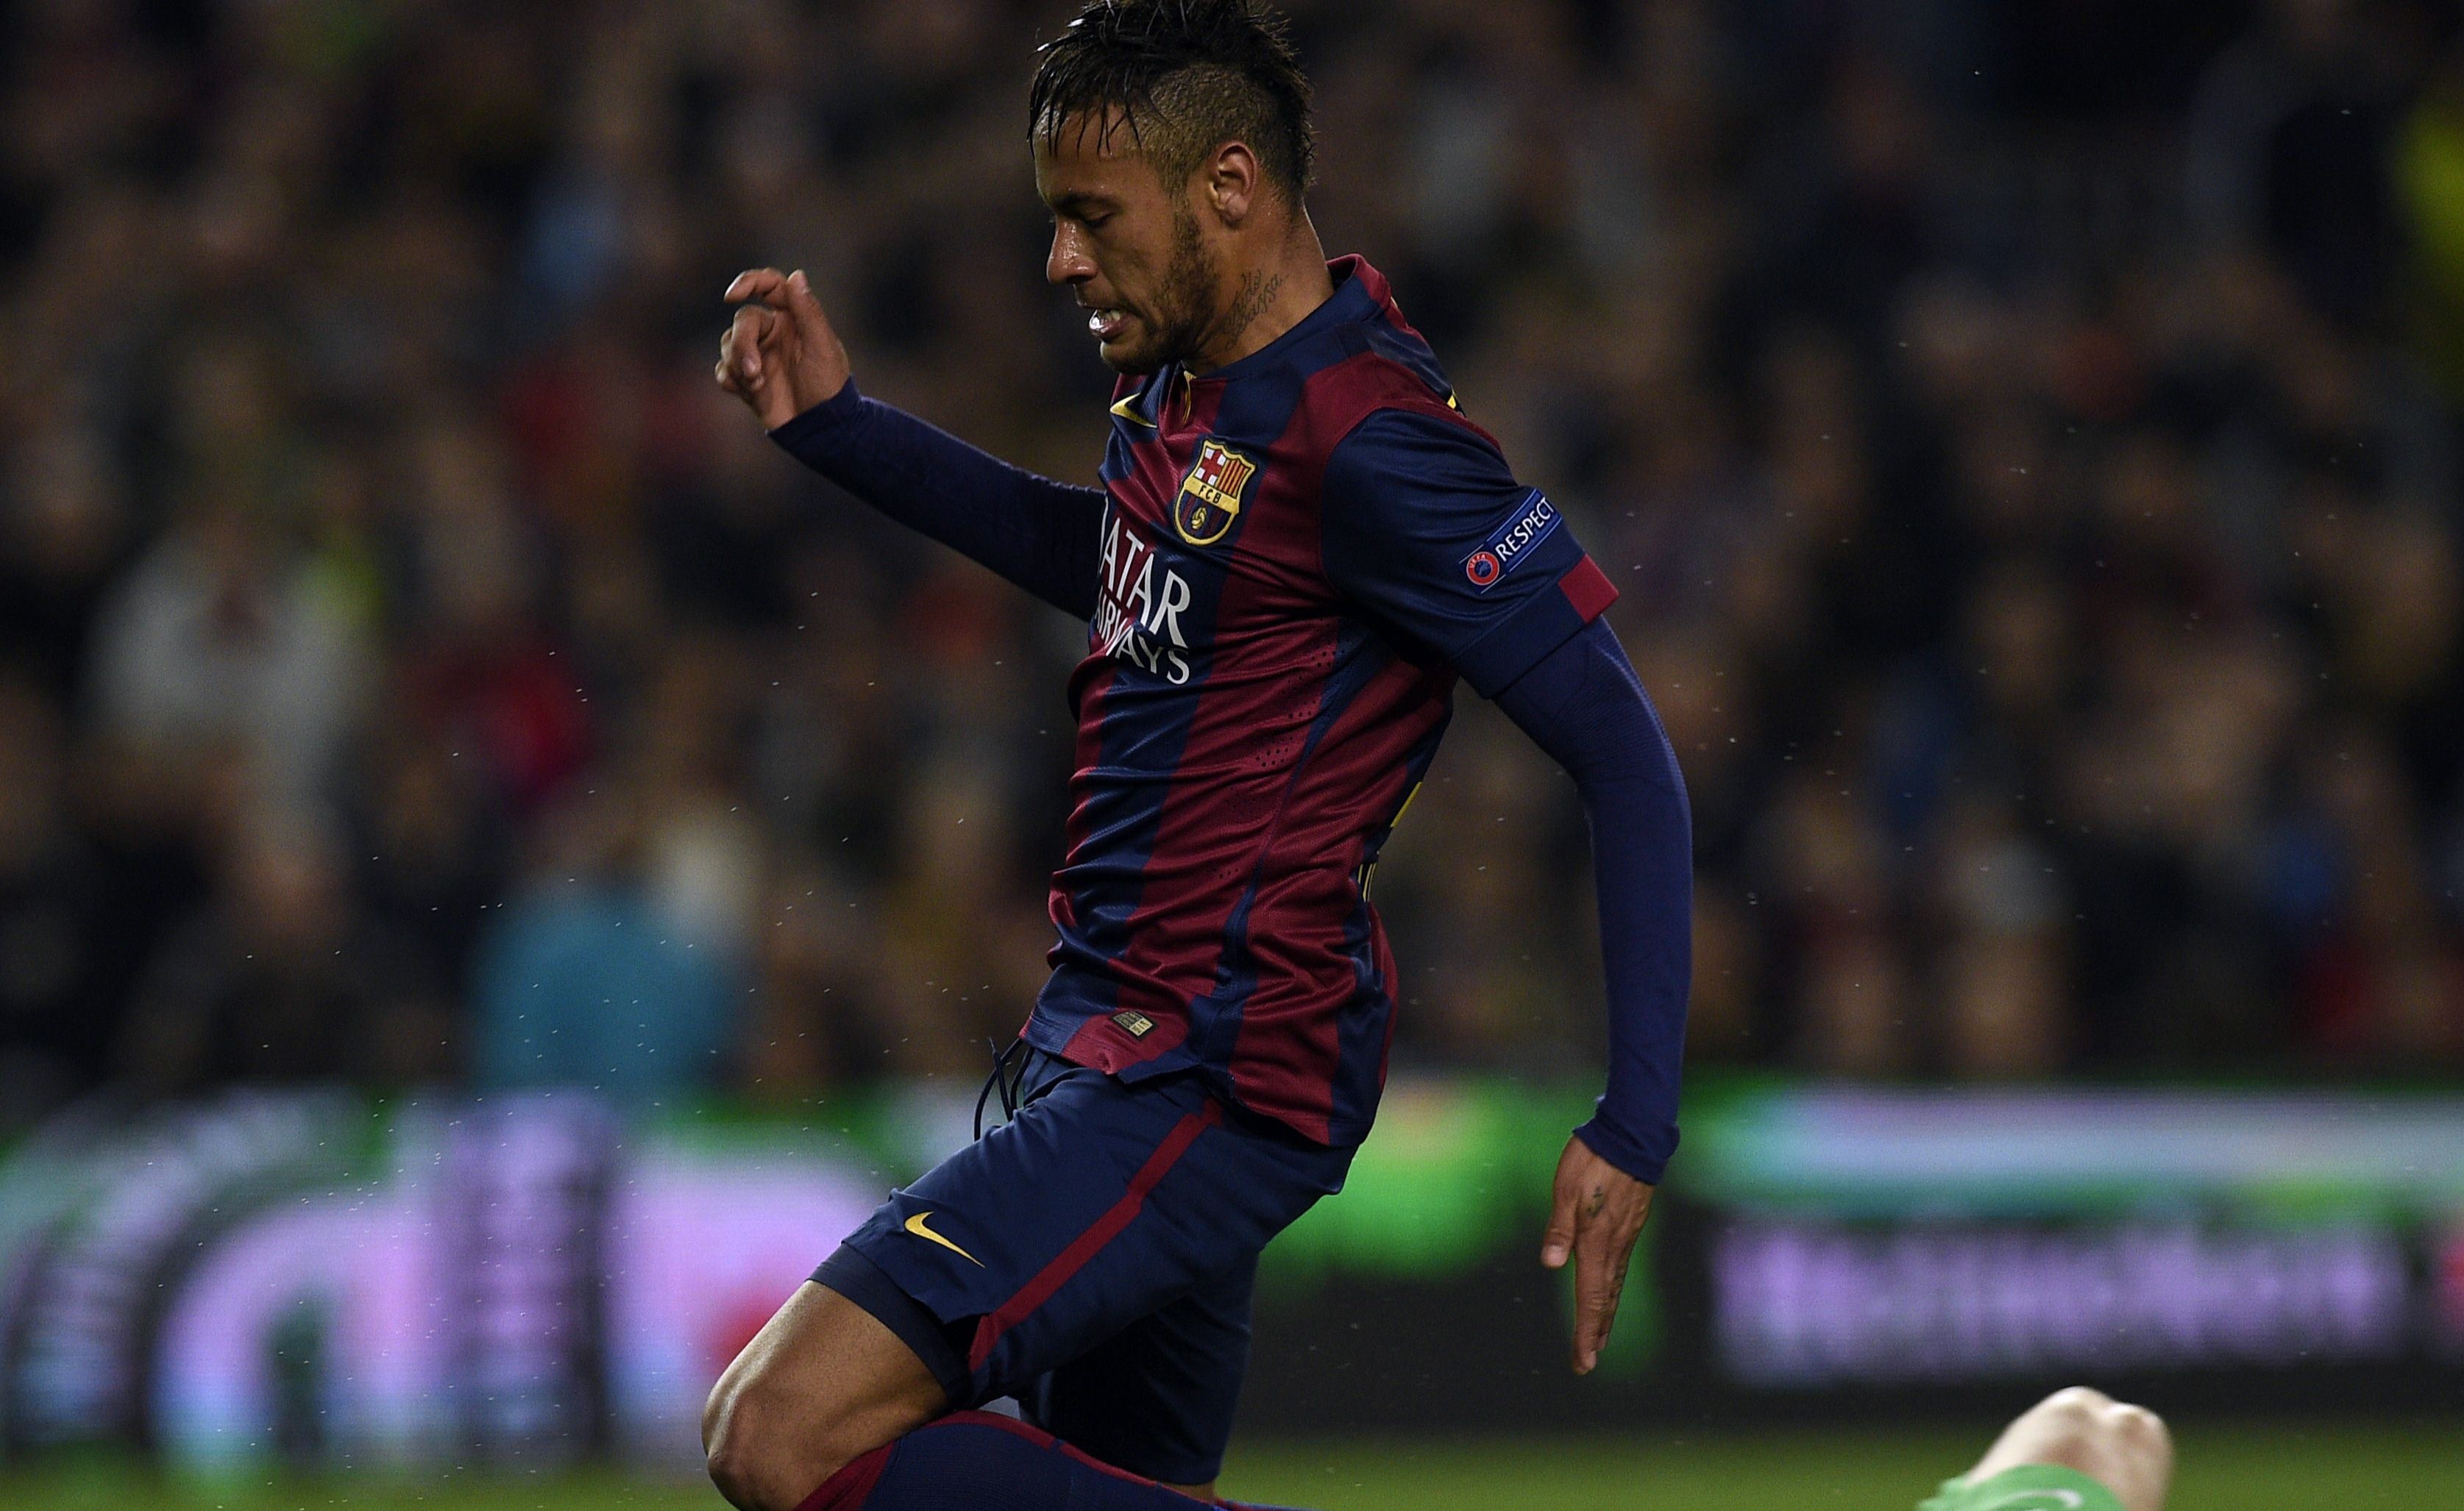 Neymar ha mostrado interés en regresar al Barcelona F.C., en medio de los difíciles días que pasa en la actualidad. (Foto Prensa Libre: AFP)